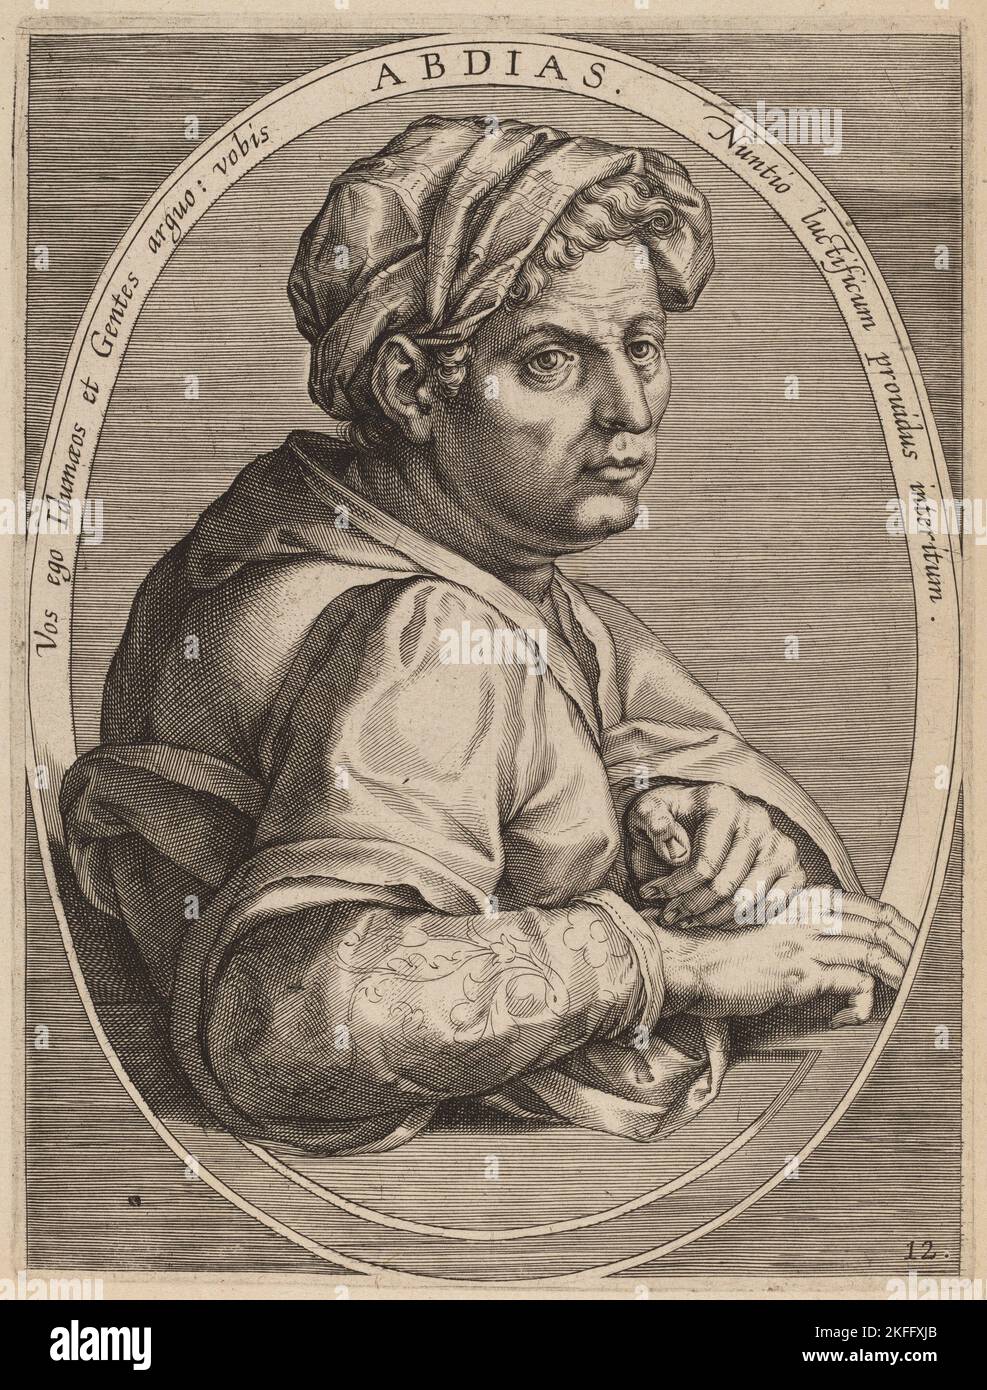 Abdias, published 1613. Stock Photo